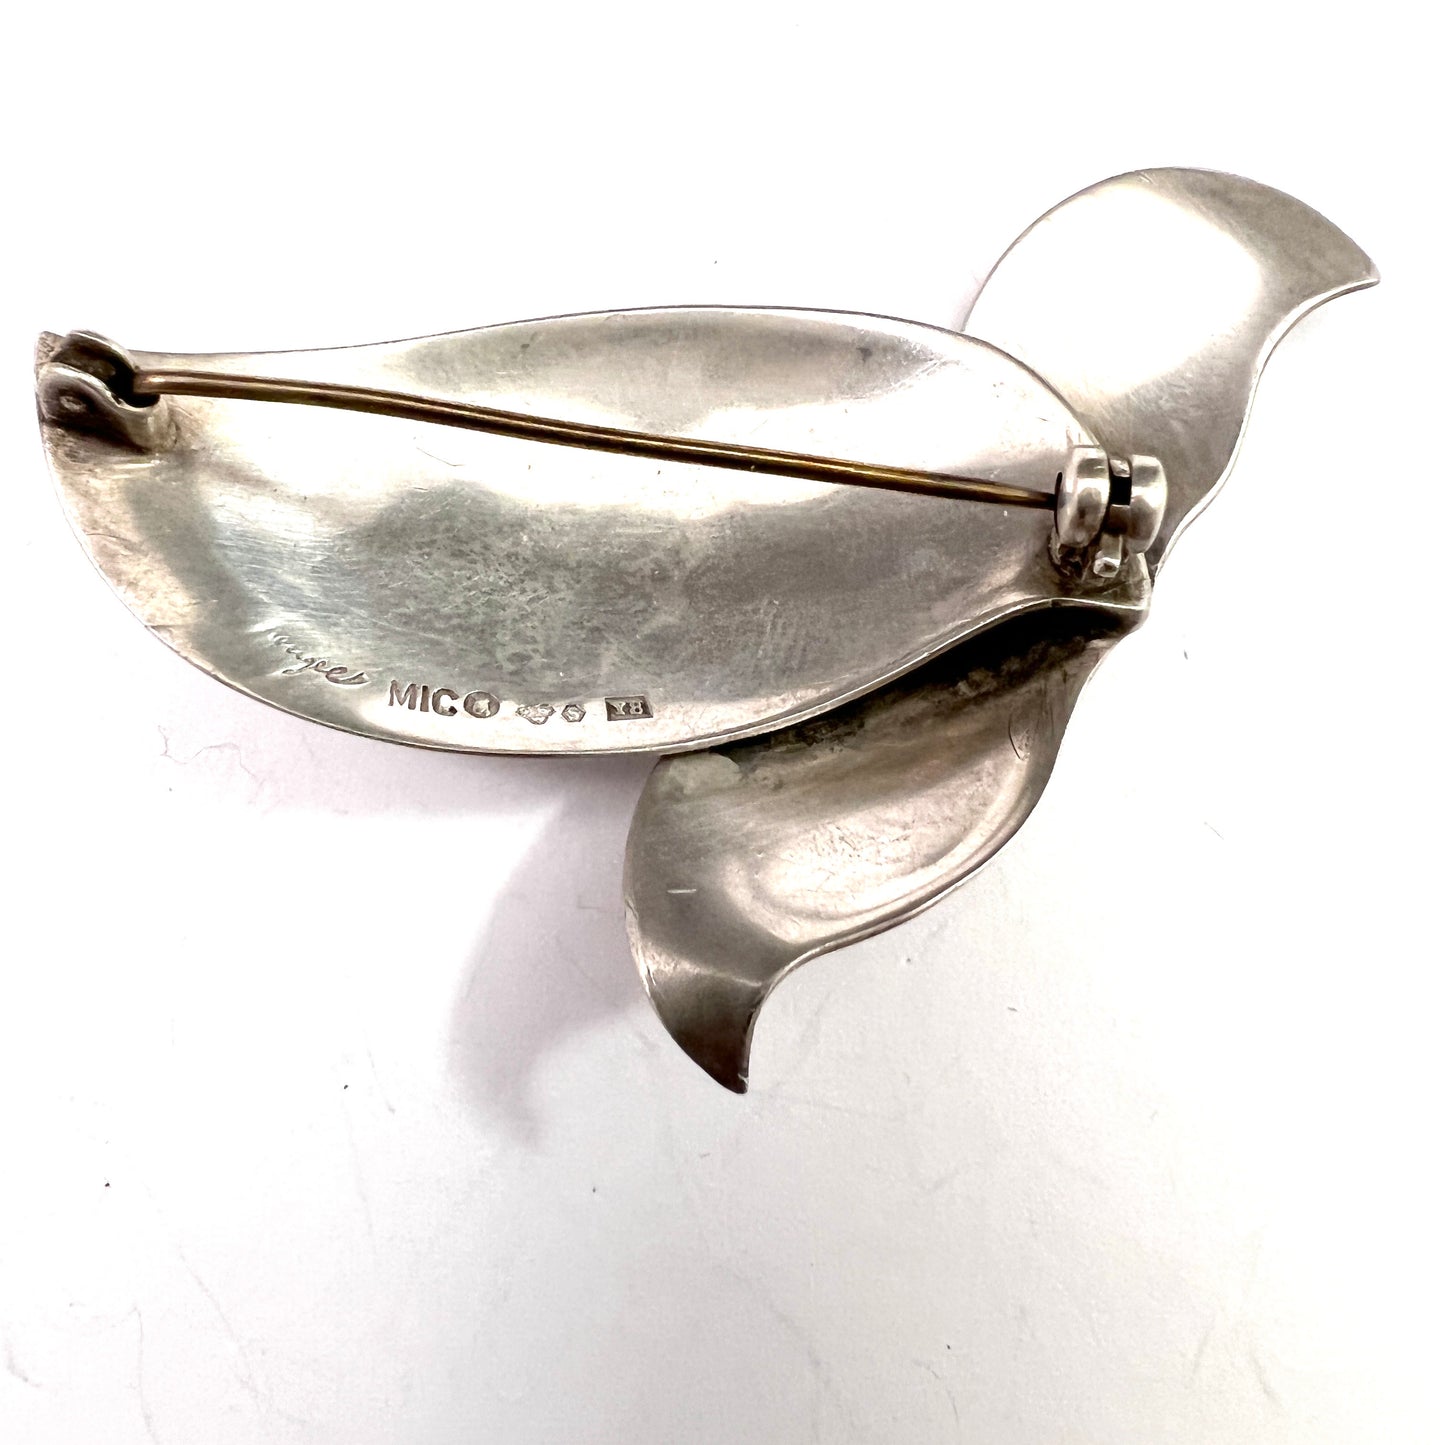 Gertrud Engel for A Michelsen Sweden 1949 Vintage Silver Brooch. Signed. Orchid?